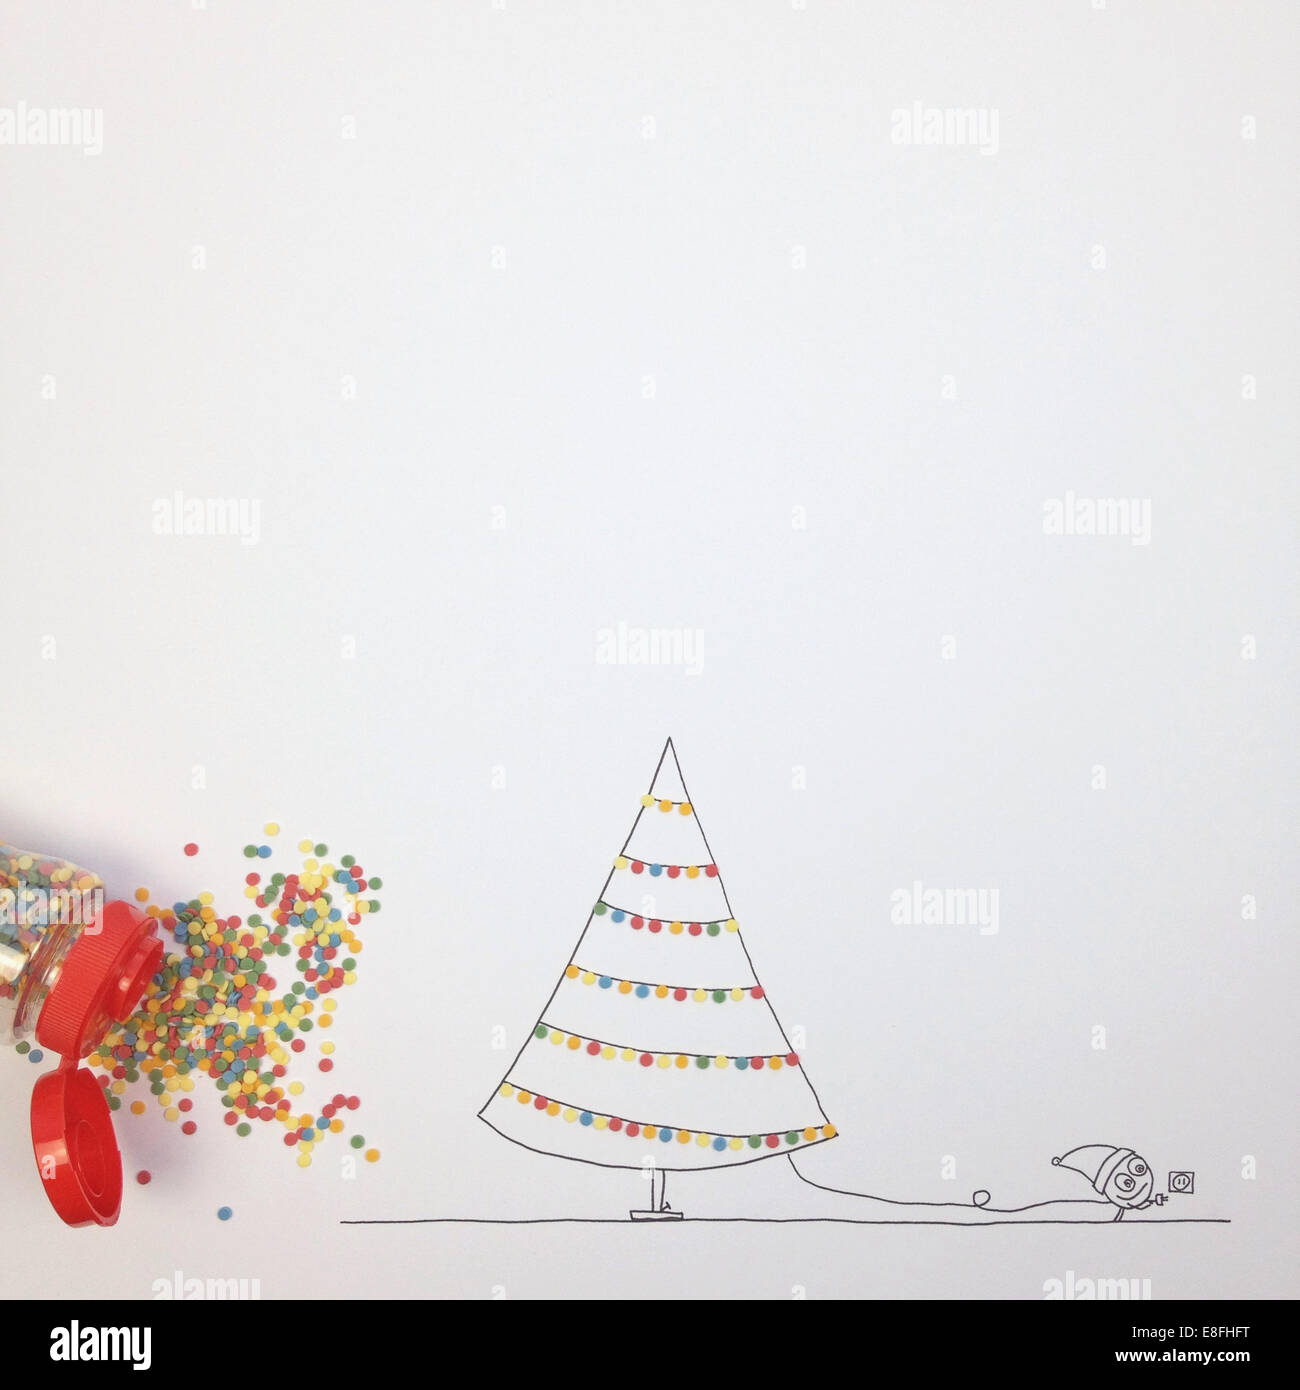 Personaggio immaginario concettuale che decora l'albero di Natale con le luci della fata Foto Stock